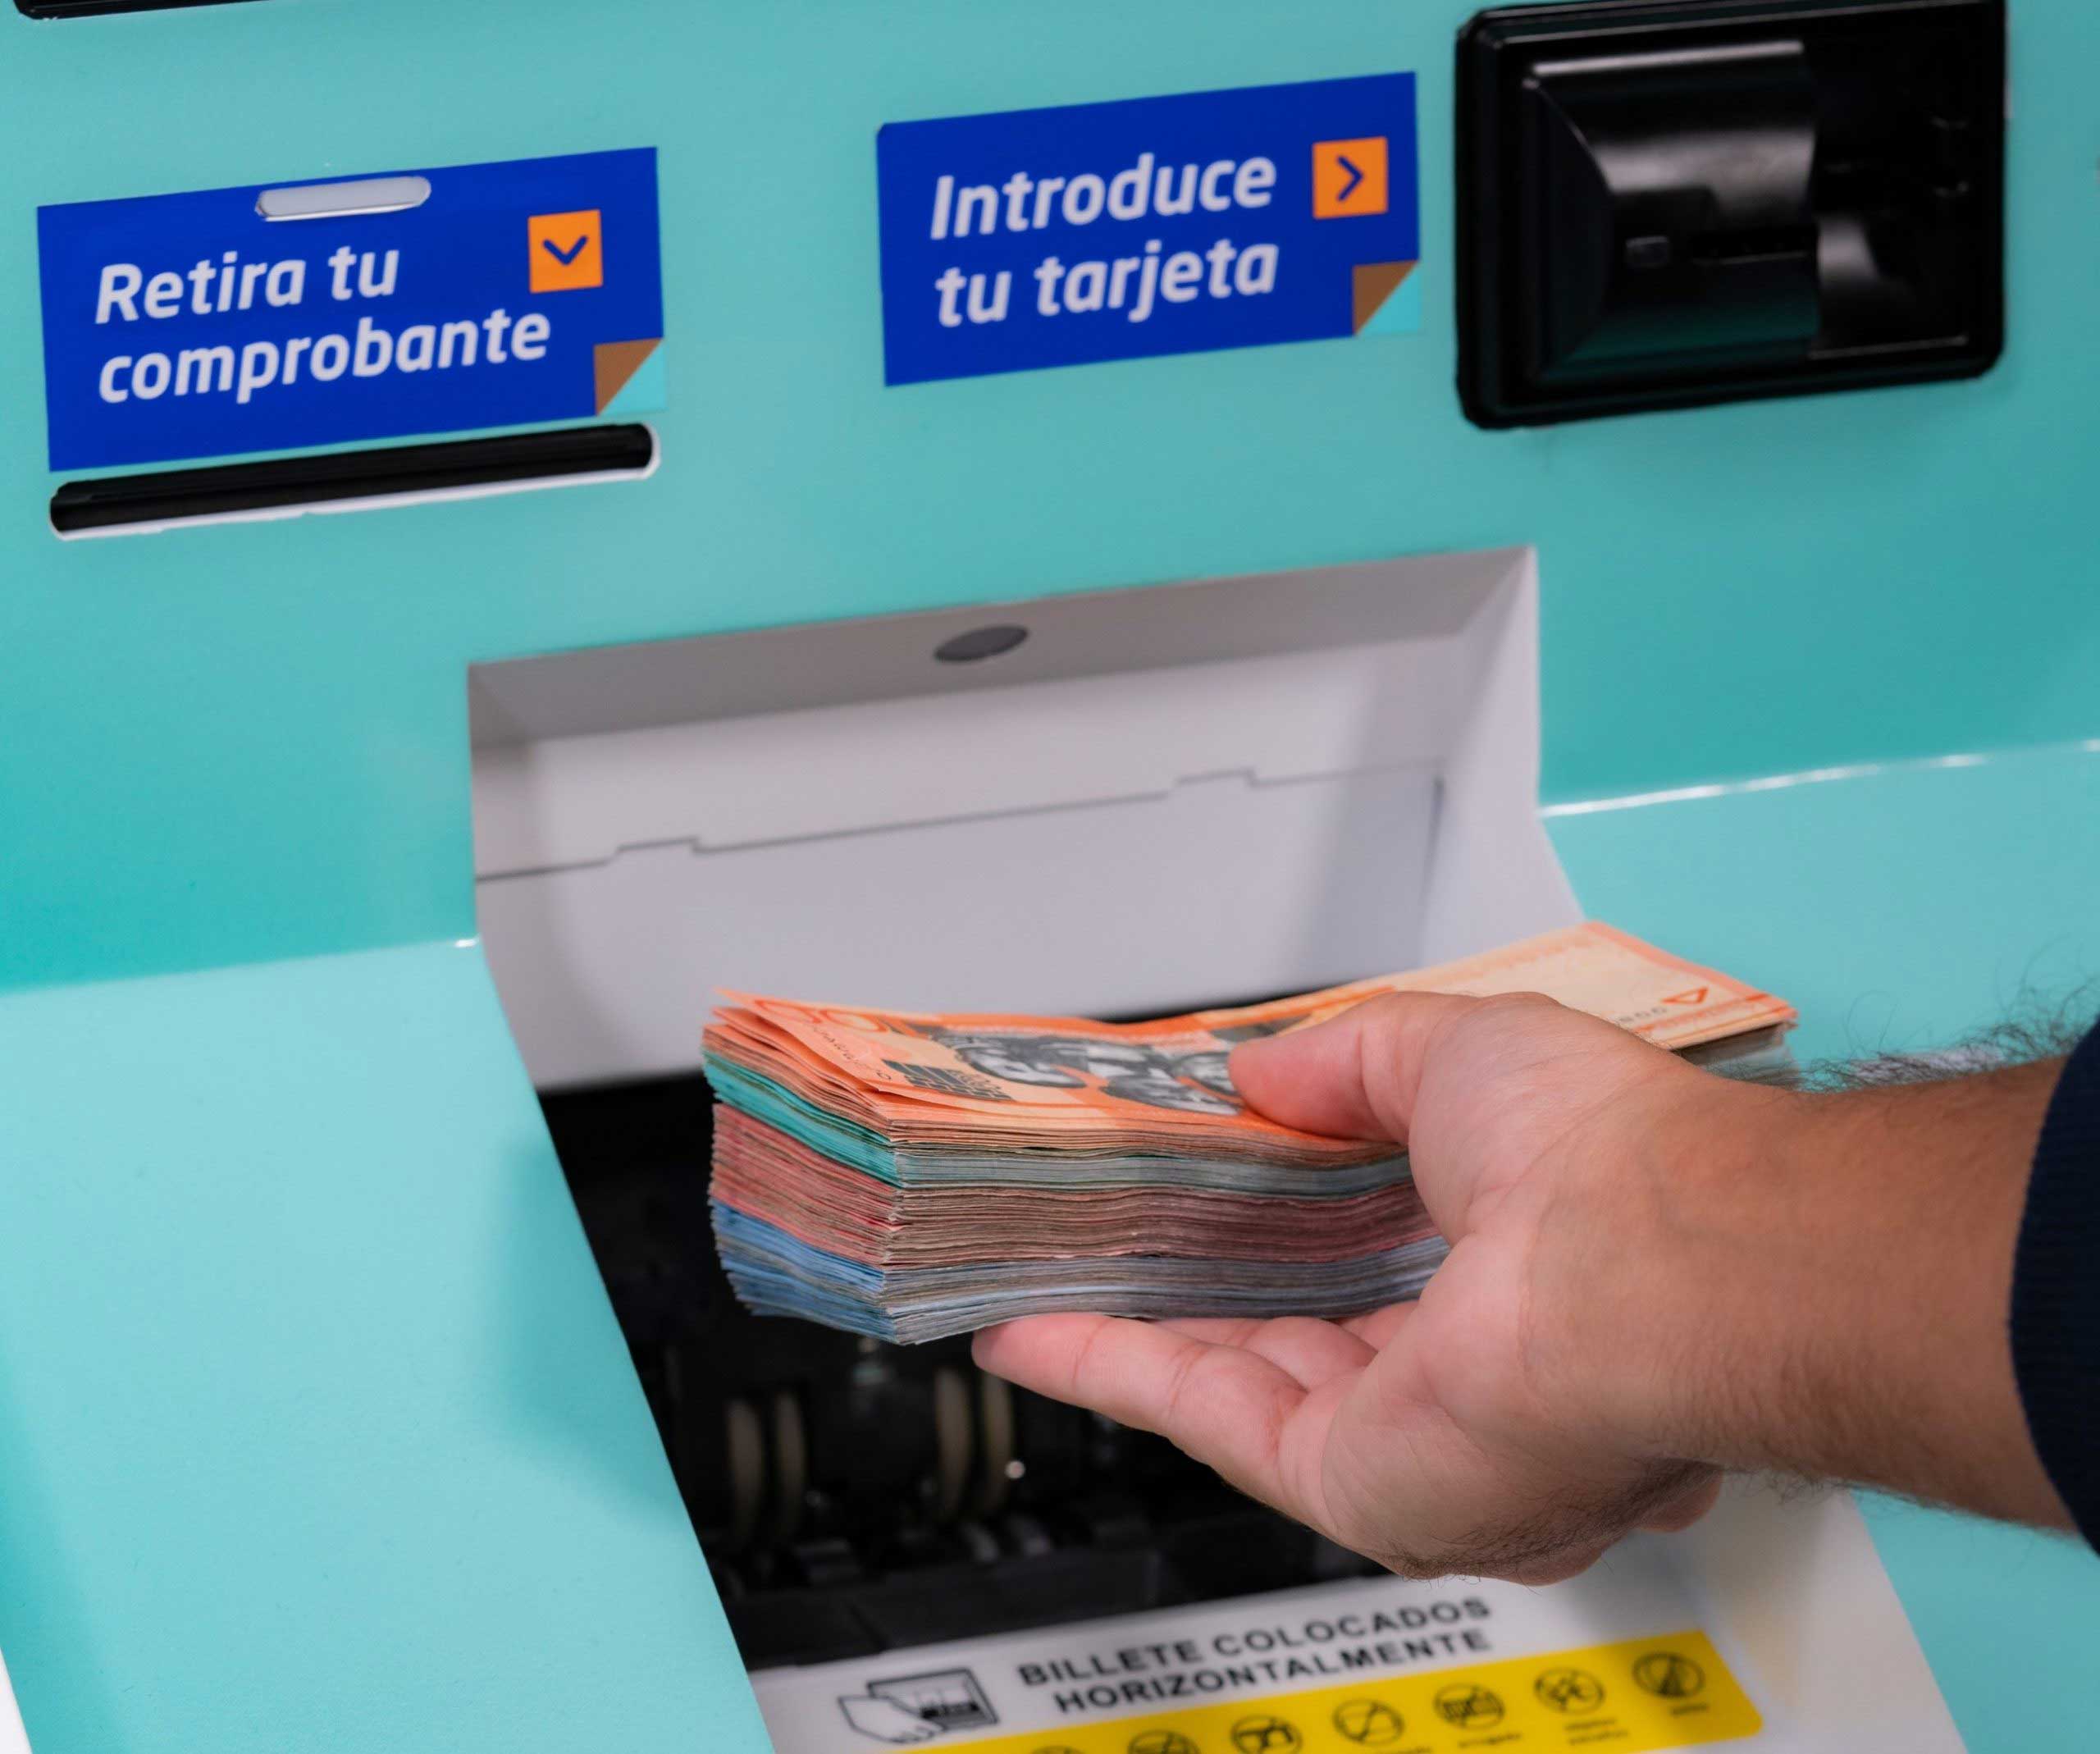 ¿Billetes o monedas? Los nuevos cajeros automáticos del Popular los